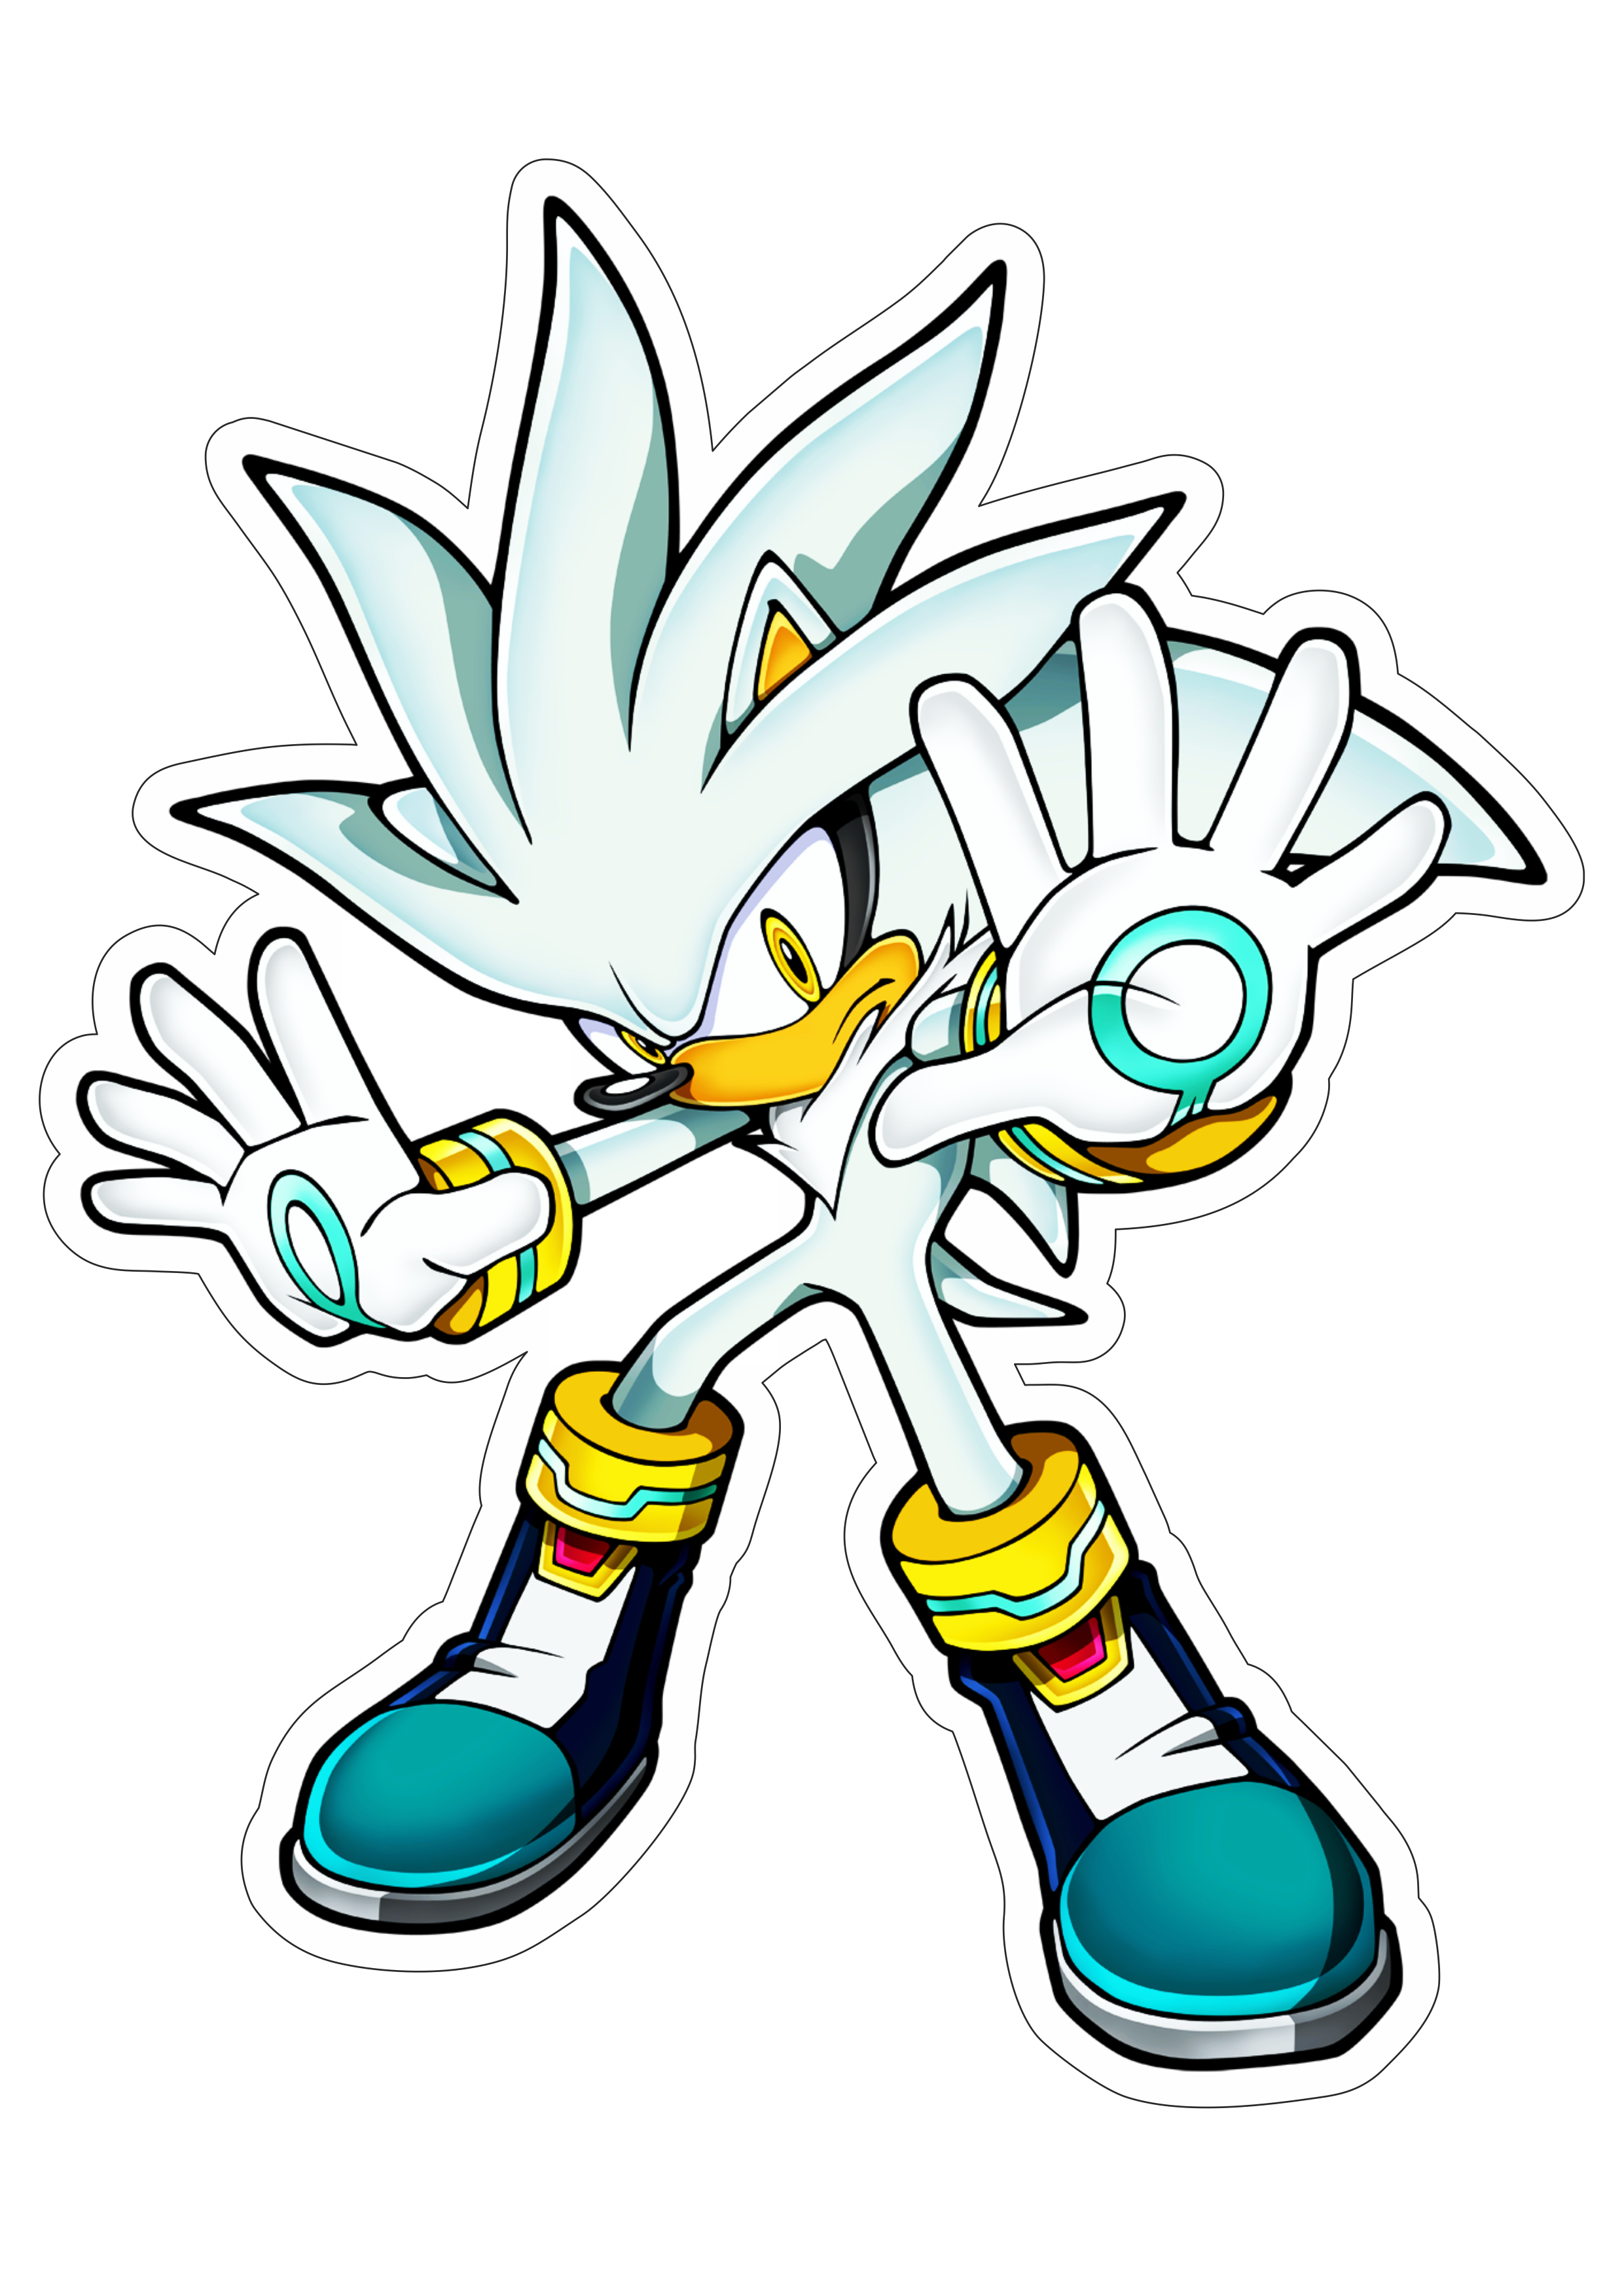 Sonic Silver the hedgehog personagem de game imagem com fundo transparente com contorno png